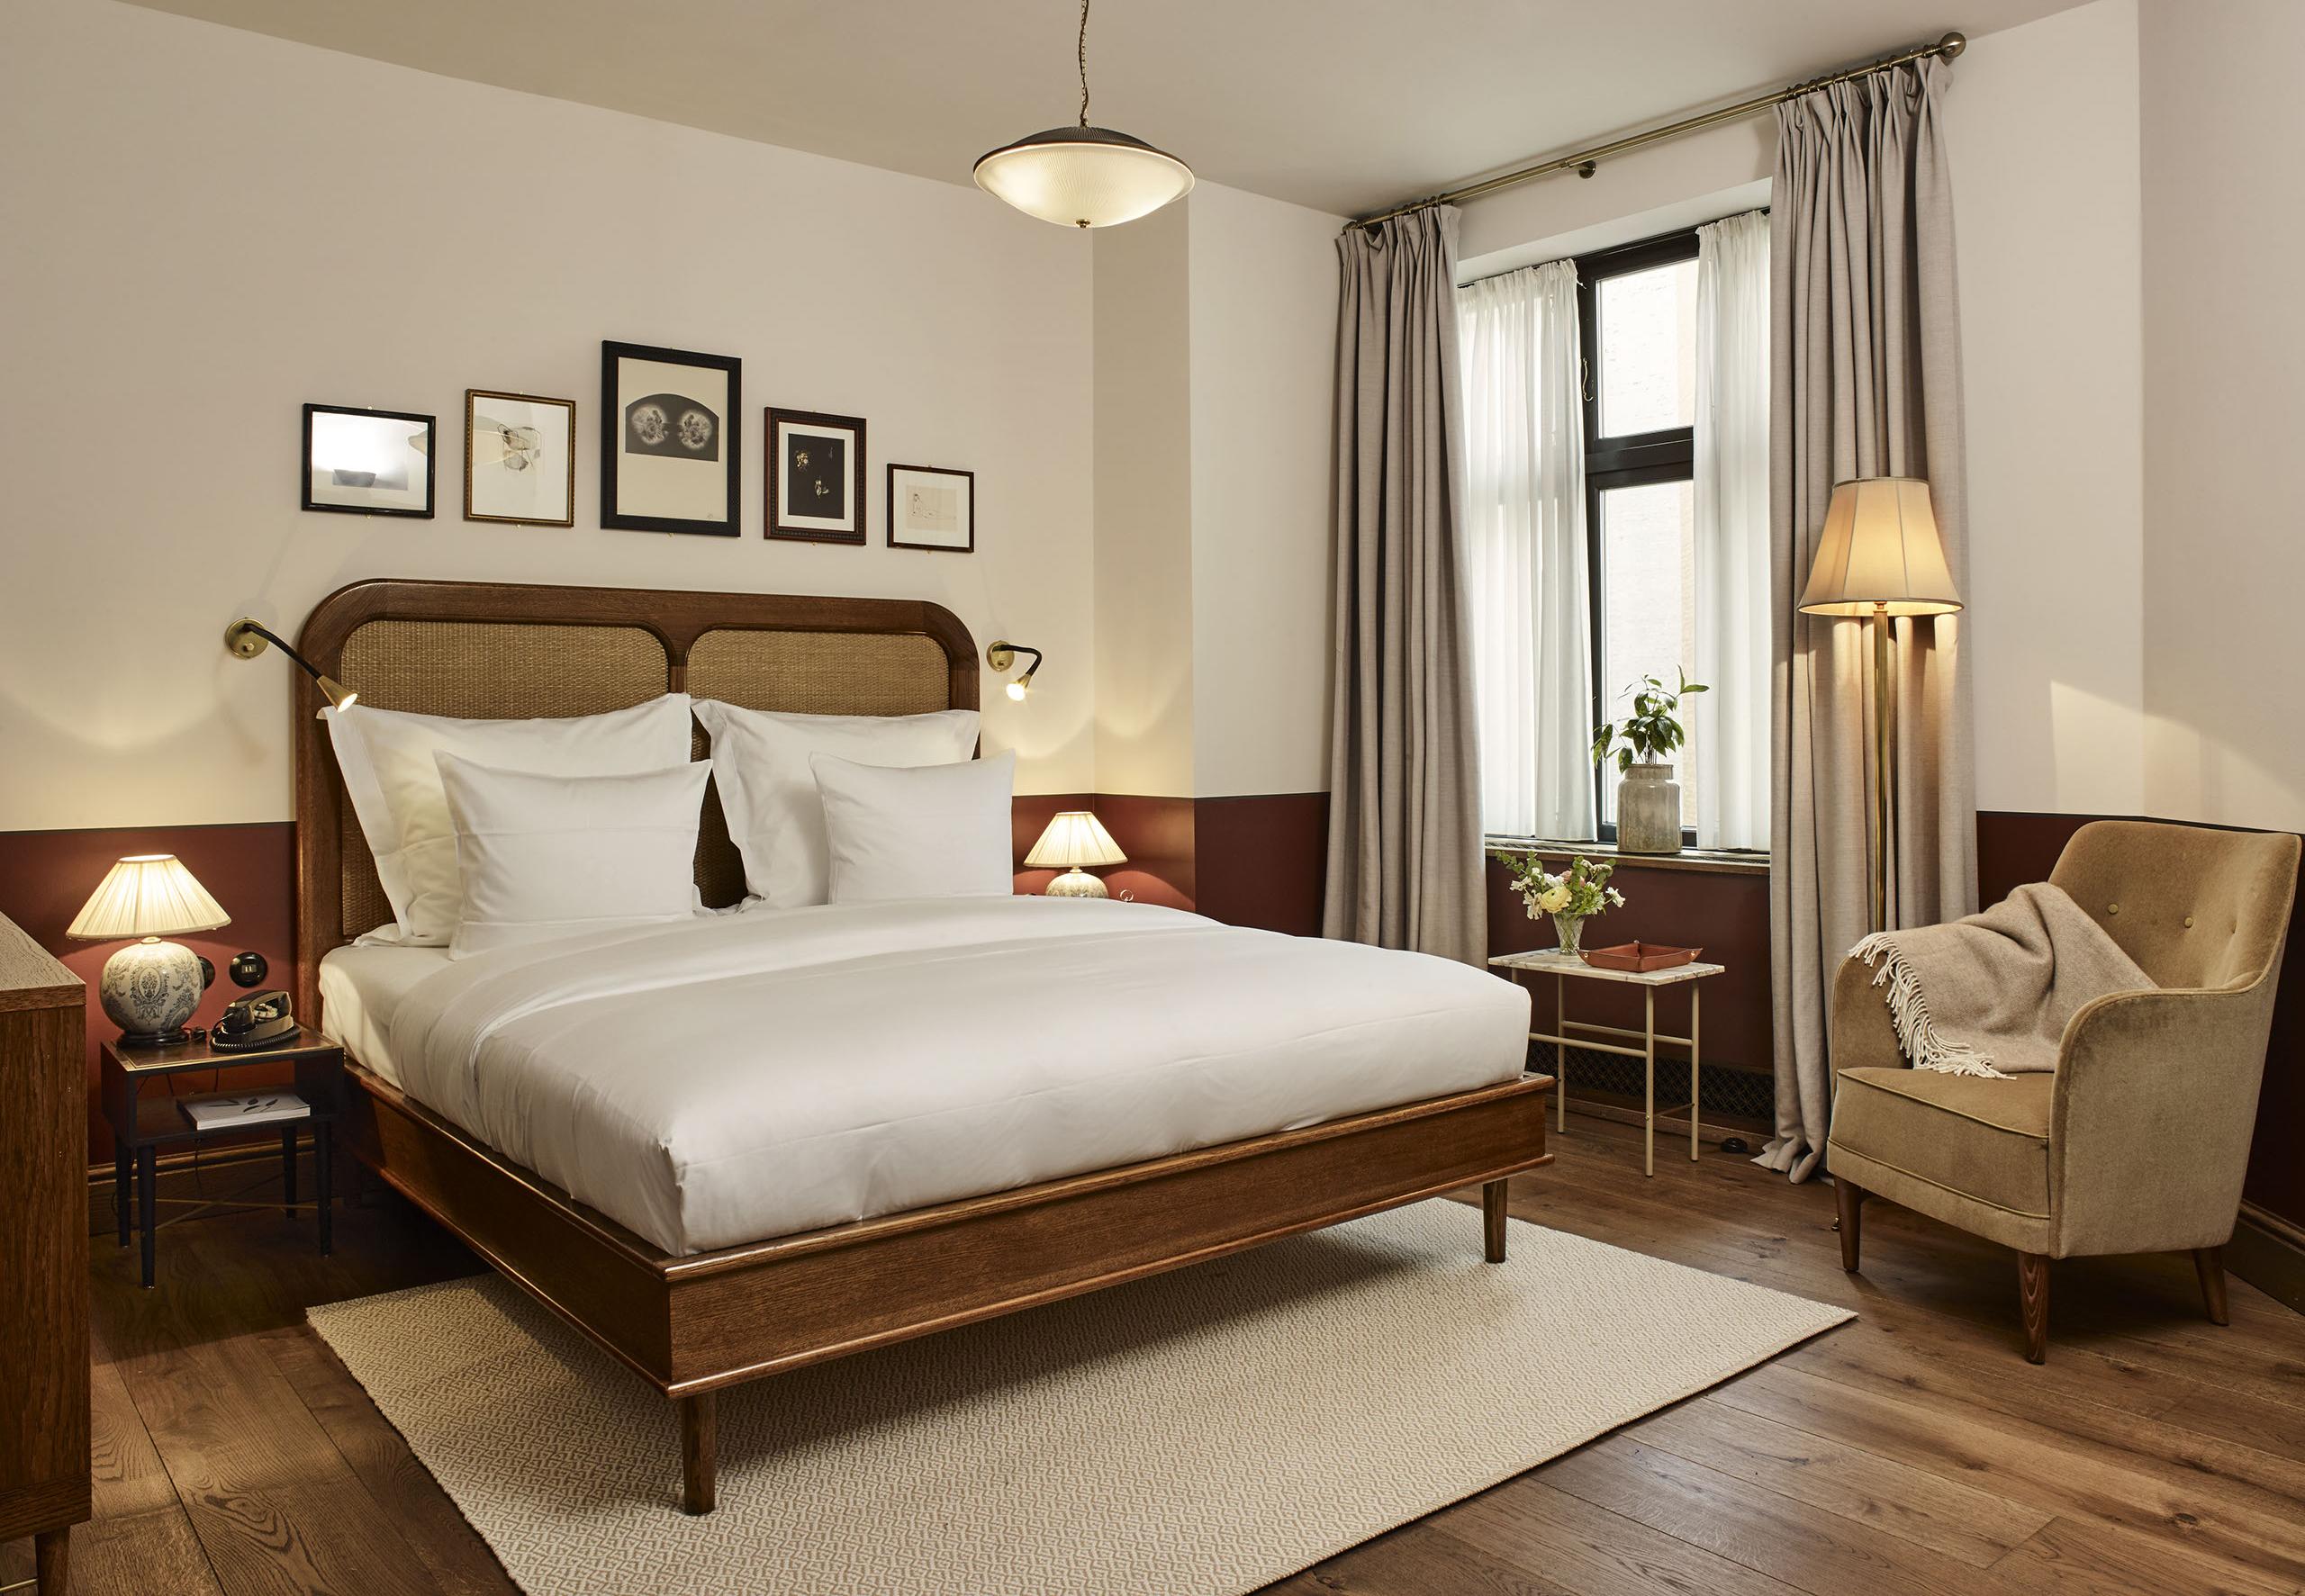 Ein Bett aus europäischer Eiche und Rattan, das speziell für Sanders, Kopenhagens führendes Luxus-Boutique-Hotel, entwickelt wurde.

Erhältlich in fünf Größen und zwei Holztönen. Auf Bestellung in Europa handgefertigt.


---


Euro-Doppel
Kopfteil -